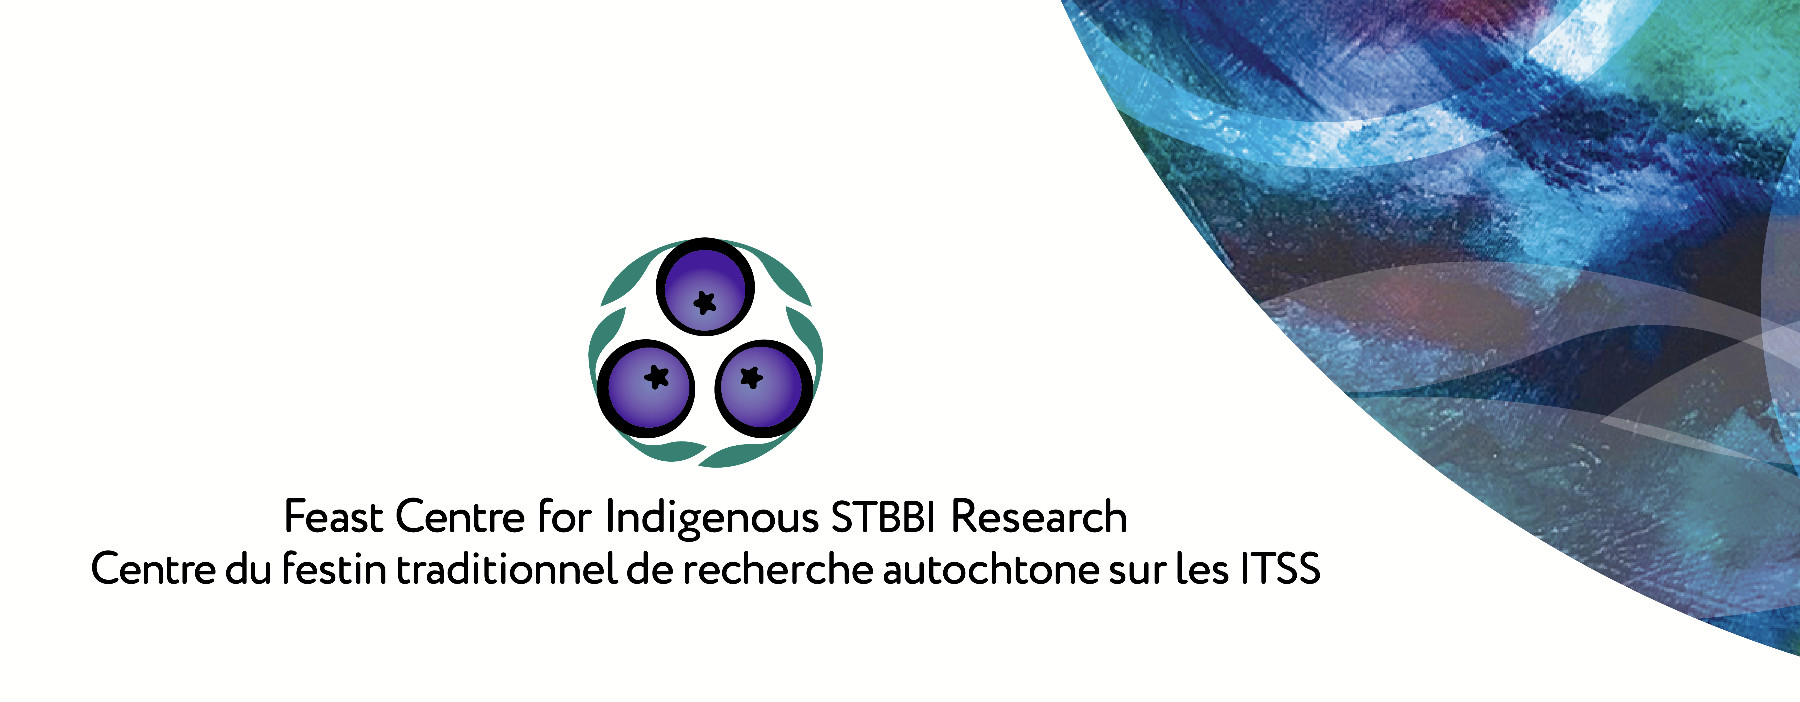 The Feast Centre for Indigenous STBBI Research, centre du festin traditionnel de recherche autochtone sure les ITSS